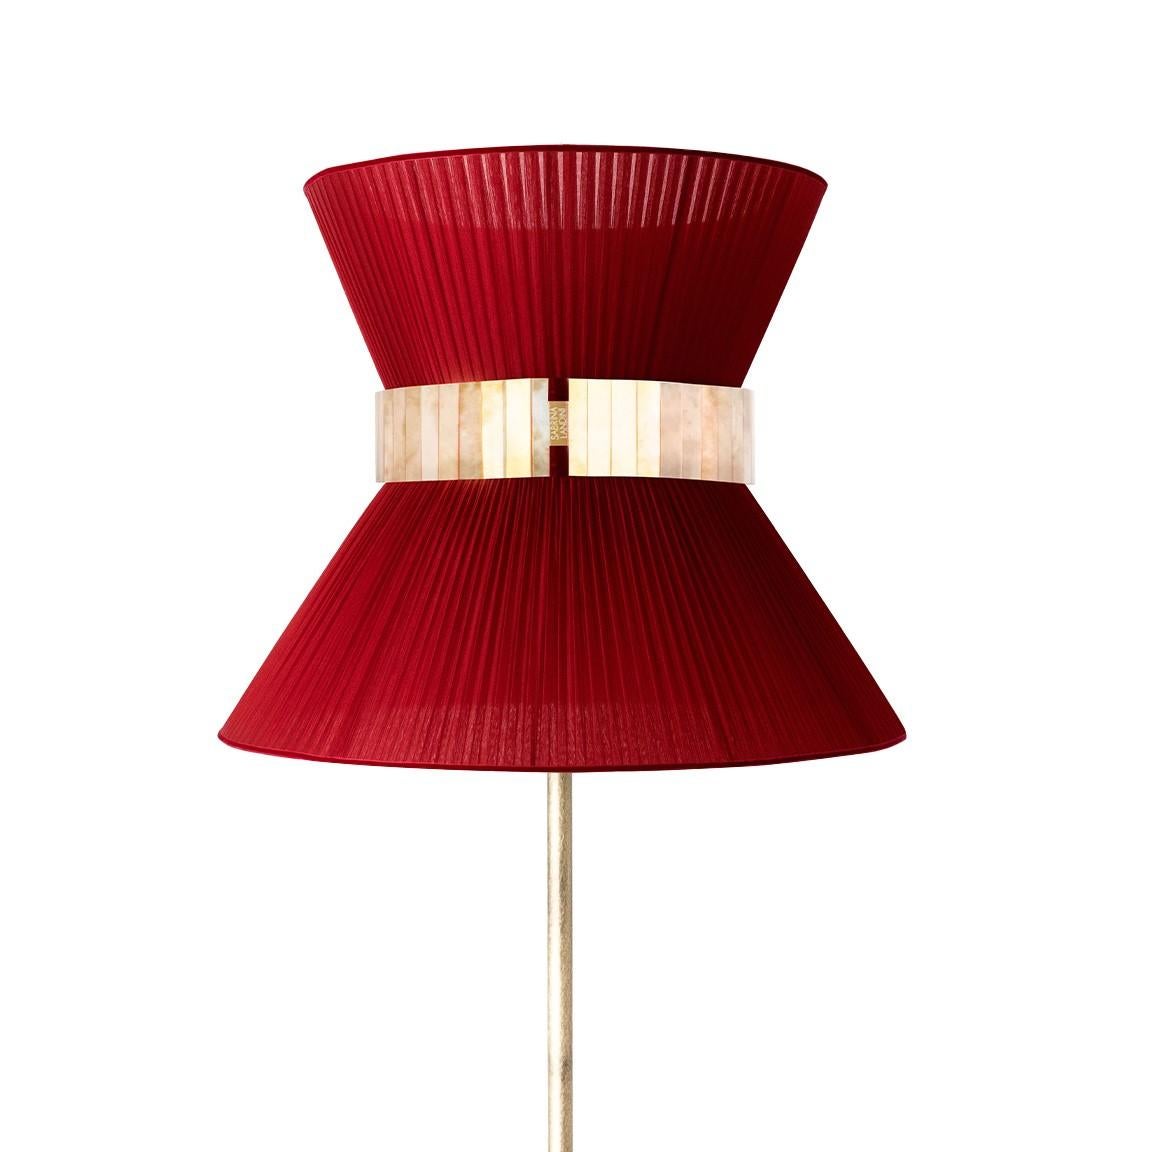 Tiffany, die legendäre Lampe!

Seit 20 Jahren sind wir bestrebt, Ihnen einzigartige Collection'S in Bezug auf Design und Qualität anzubieten. Alle unsere kultigen Produkte werden in unserem Atelier in der Toskana, Italien, nach einem uralten